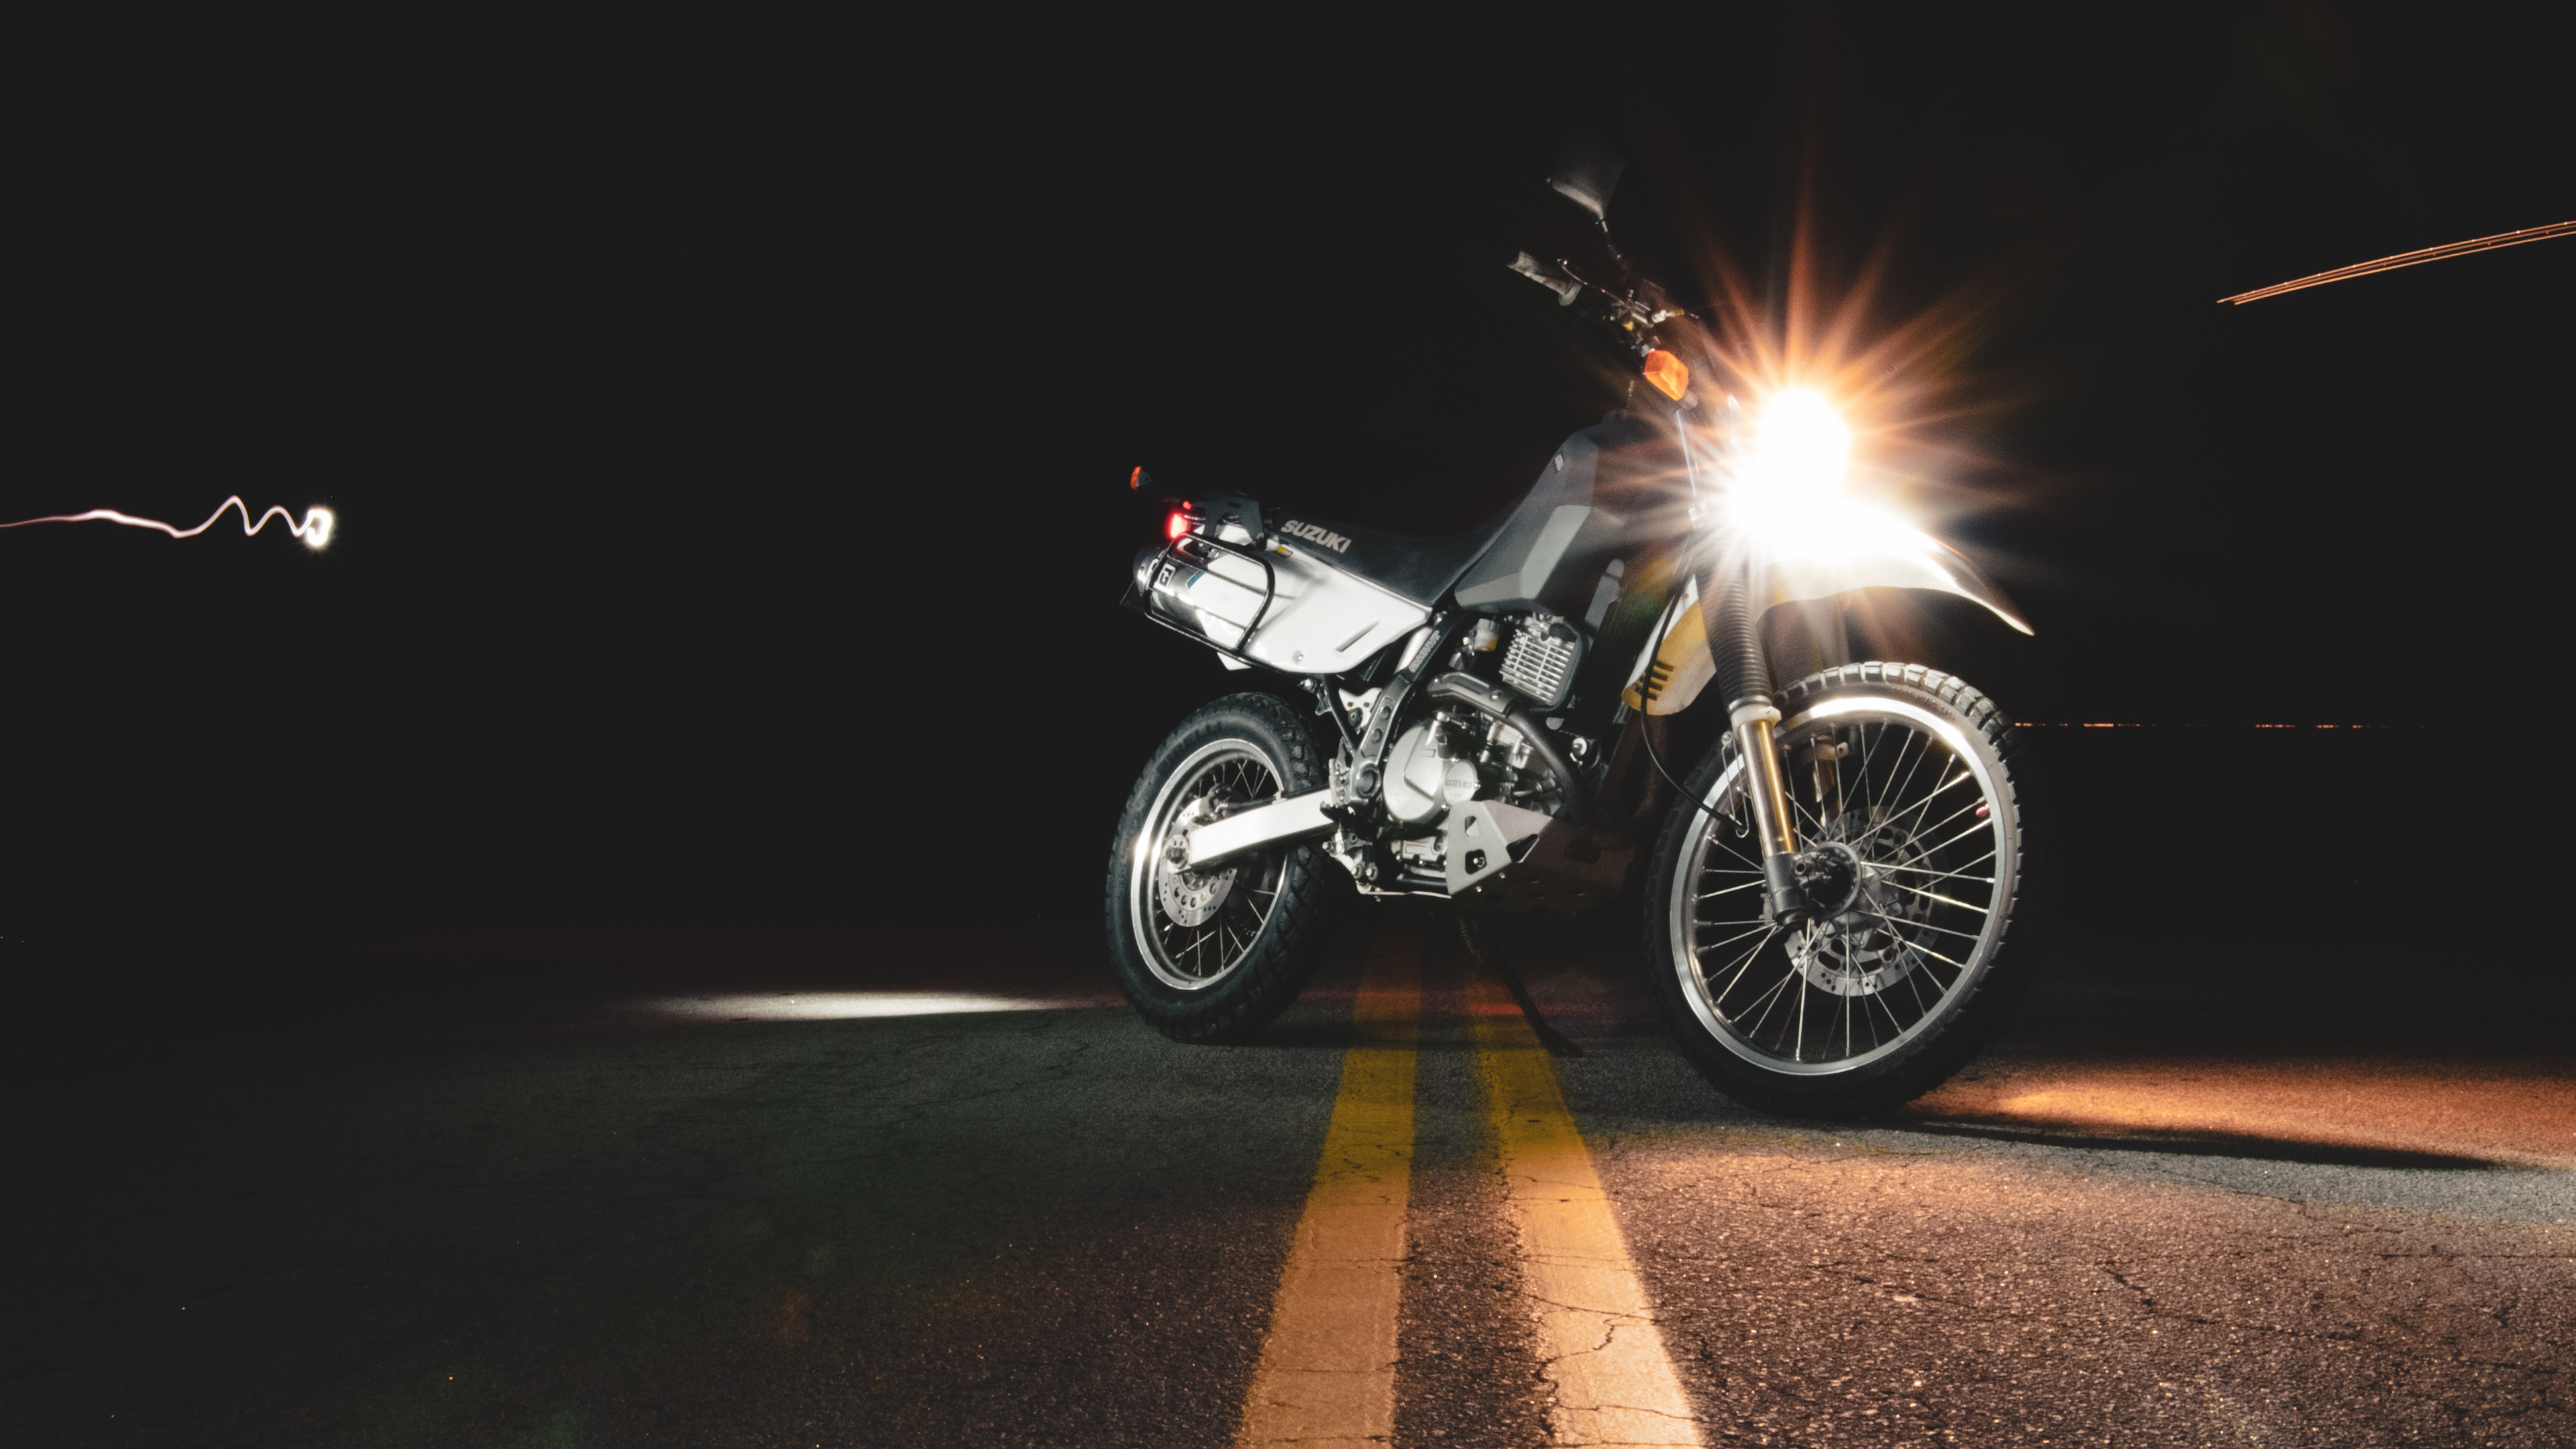 摩托车配件, 车灯, 头灯, 光, 自由式的摩托车越野赛 壁纸 3840x2160 允许